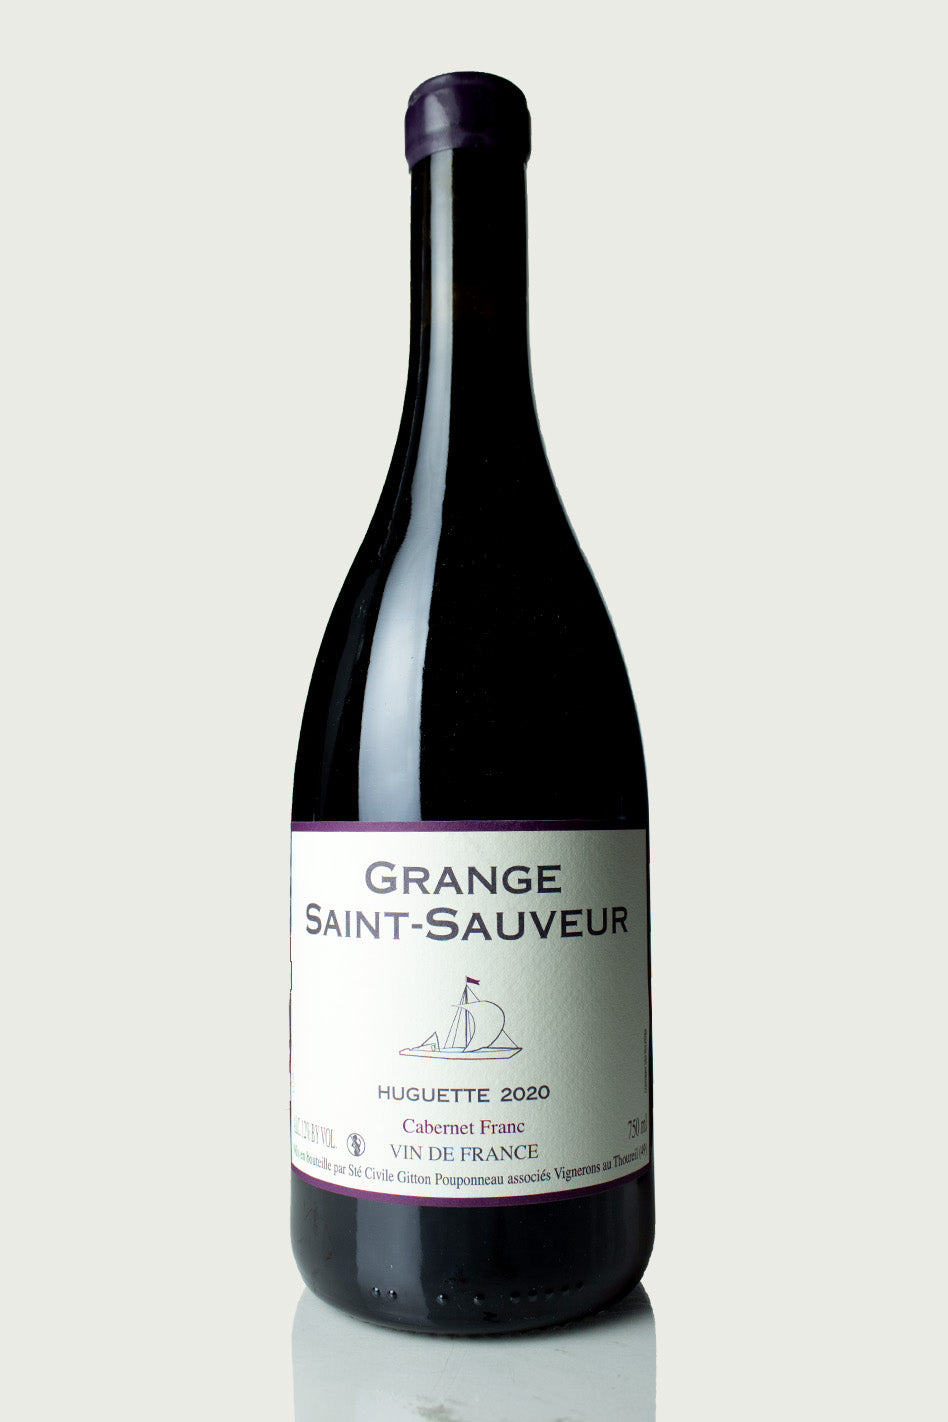 Grange Saint-Sauveur 'Huguette' 2020